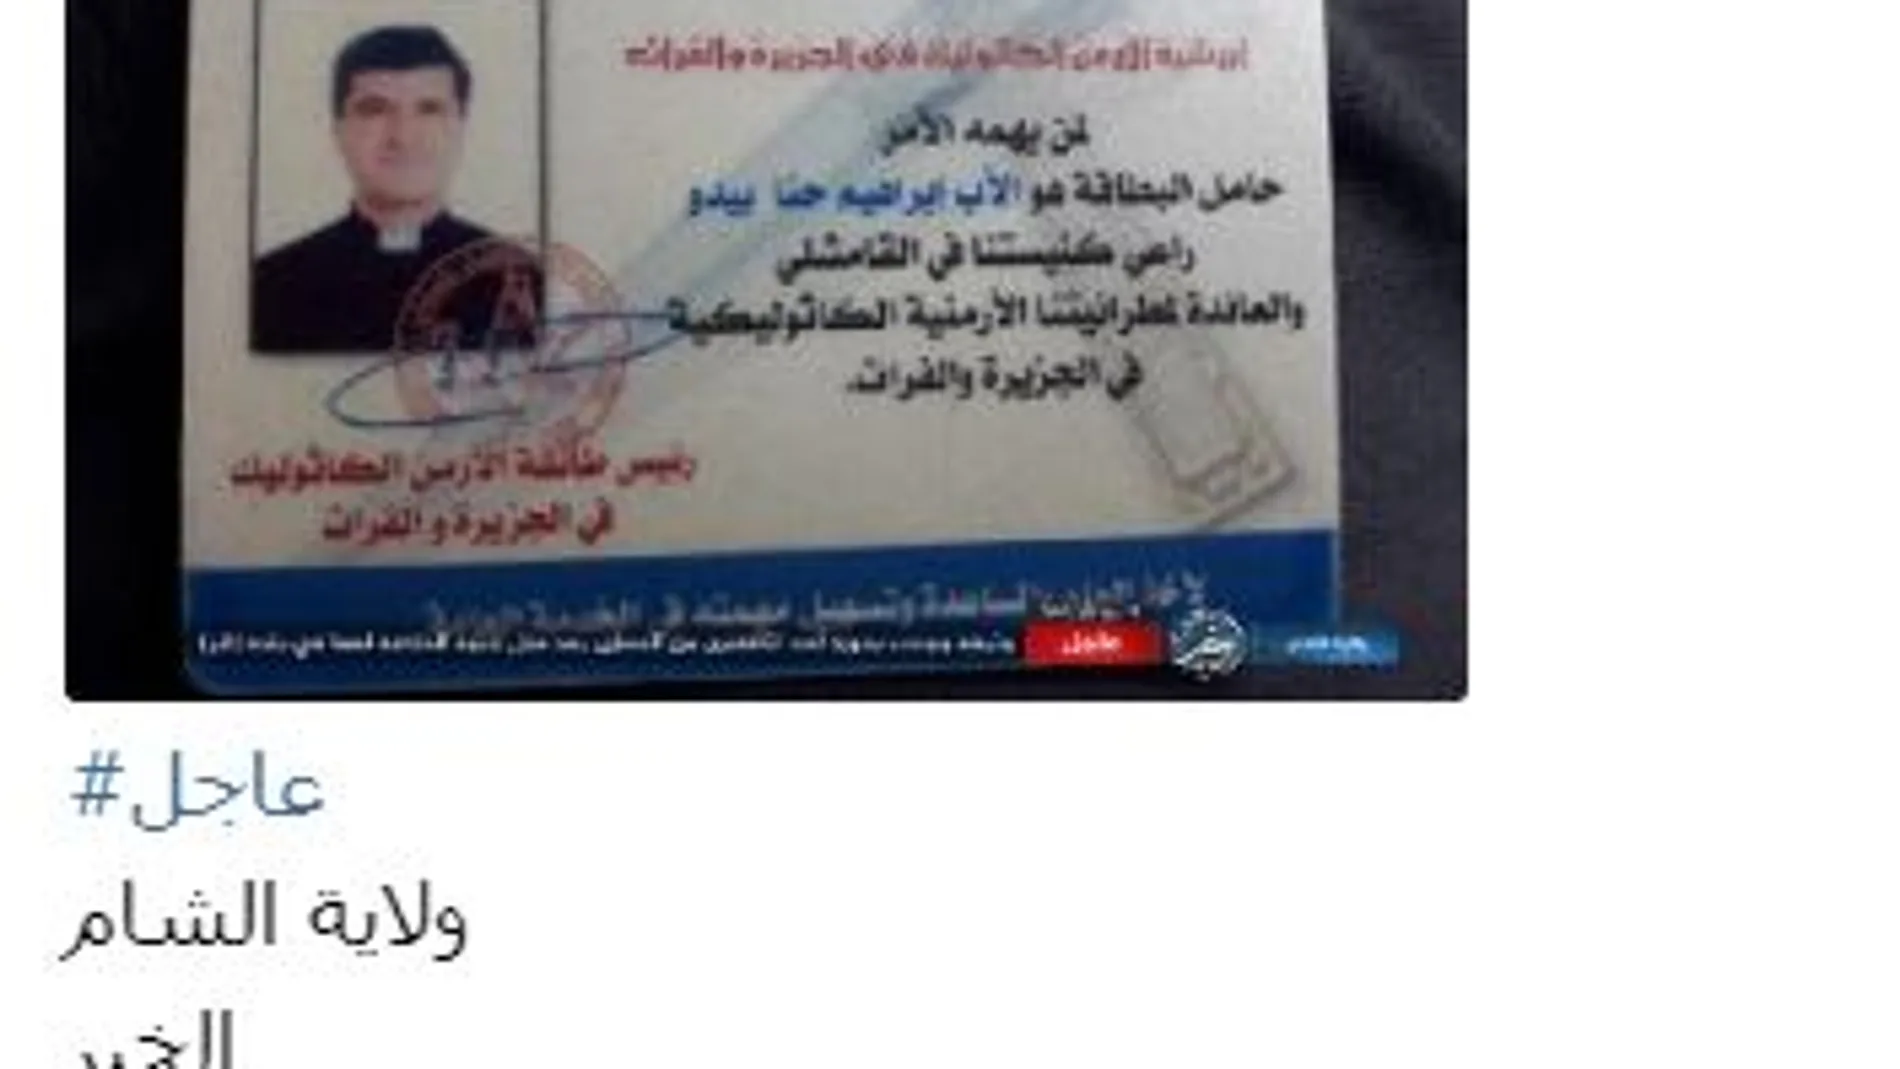 Imagen del carnet de una de las víctimas difundida por el Estado Islámico